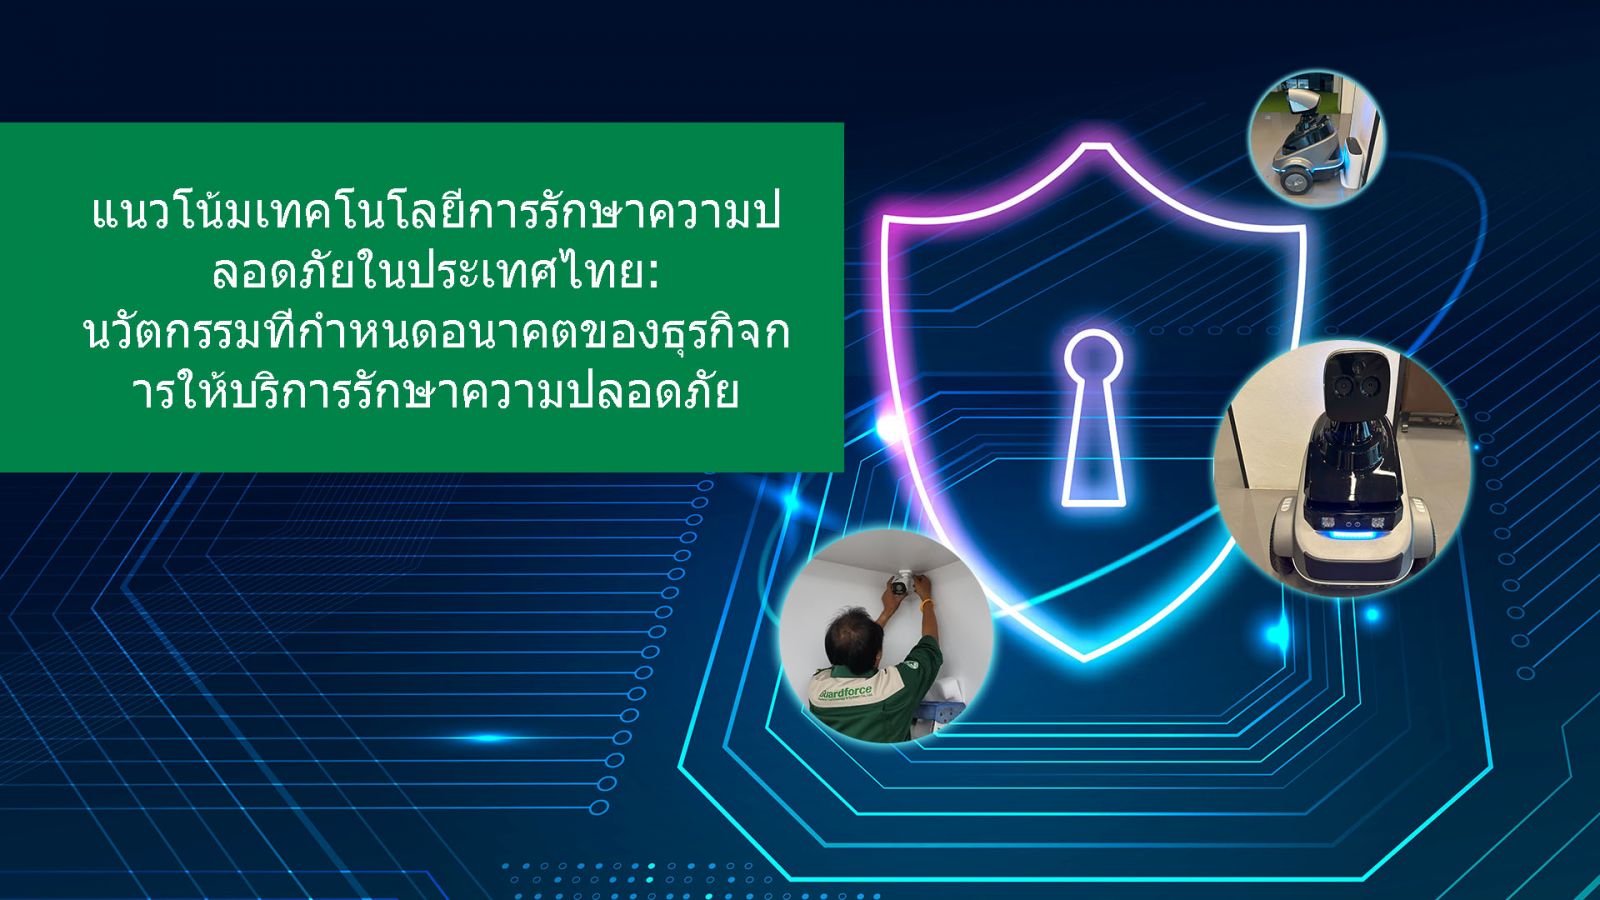  แนวโน้มเทคโนโลยีการรักษาความปลอดภัยในประเทศไทย: นวัตกรรมที่กำหนดอนาคตของธุรกิจการให้บริการรักษาความปลอดภัย